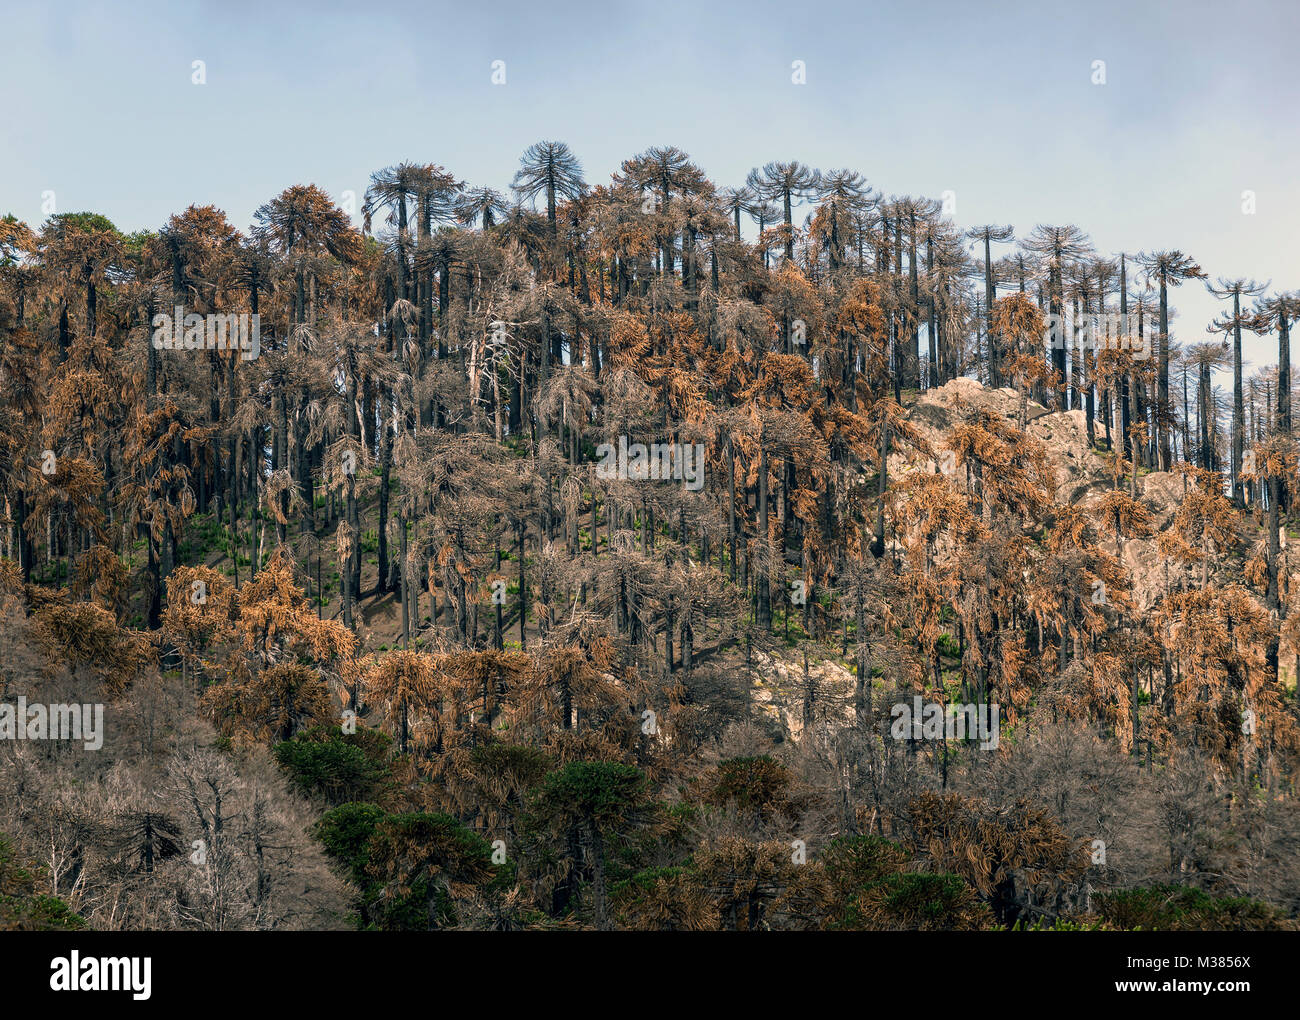 Reserva Nacional China Muerta, Chile. / Natural Reserve China muerta. Se cumplen 3 años desde la tragedia de China Muerta en la región de la Araucania. Stock Photo